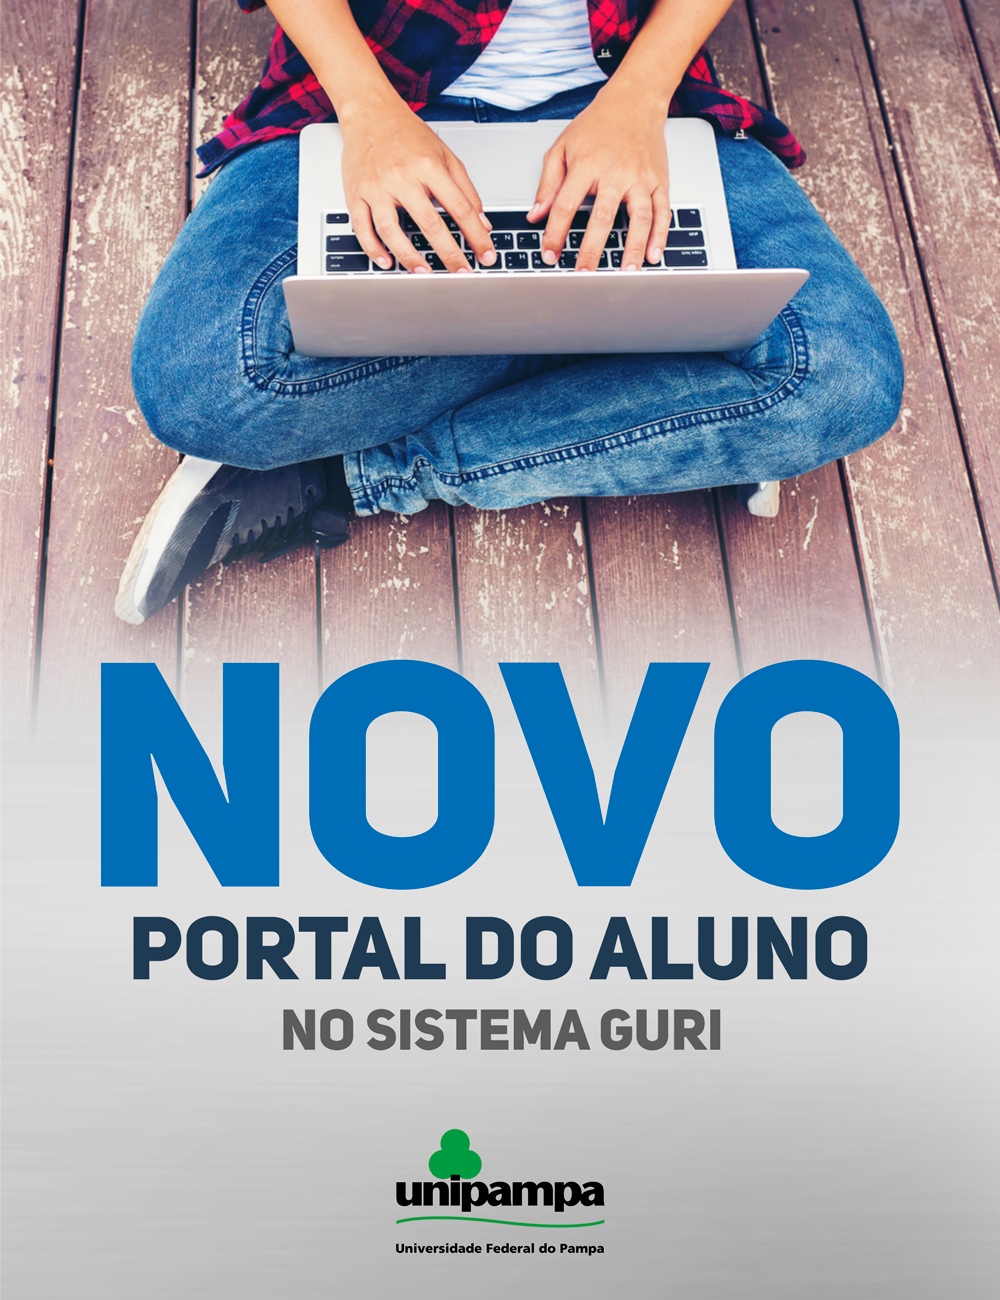 Foto de um jovem com notebook no colo onde se lê abaixo a frase "Novo Portal do Aluno no Sistema Guri".